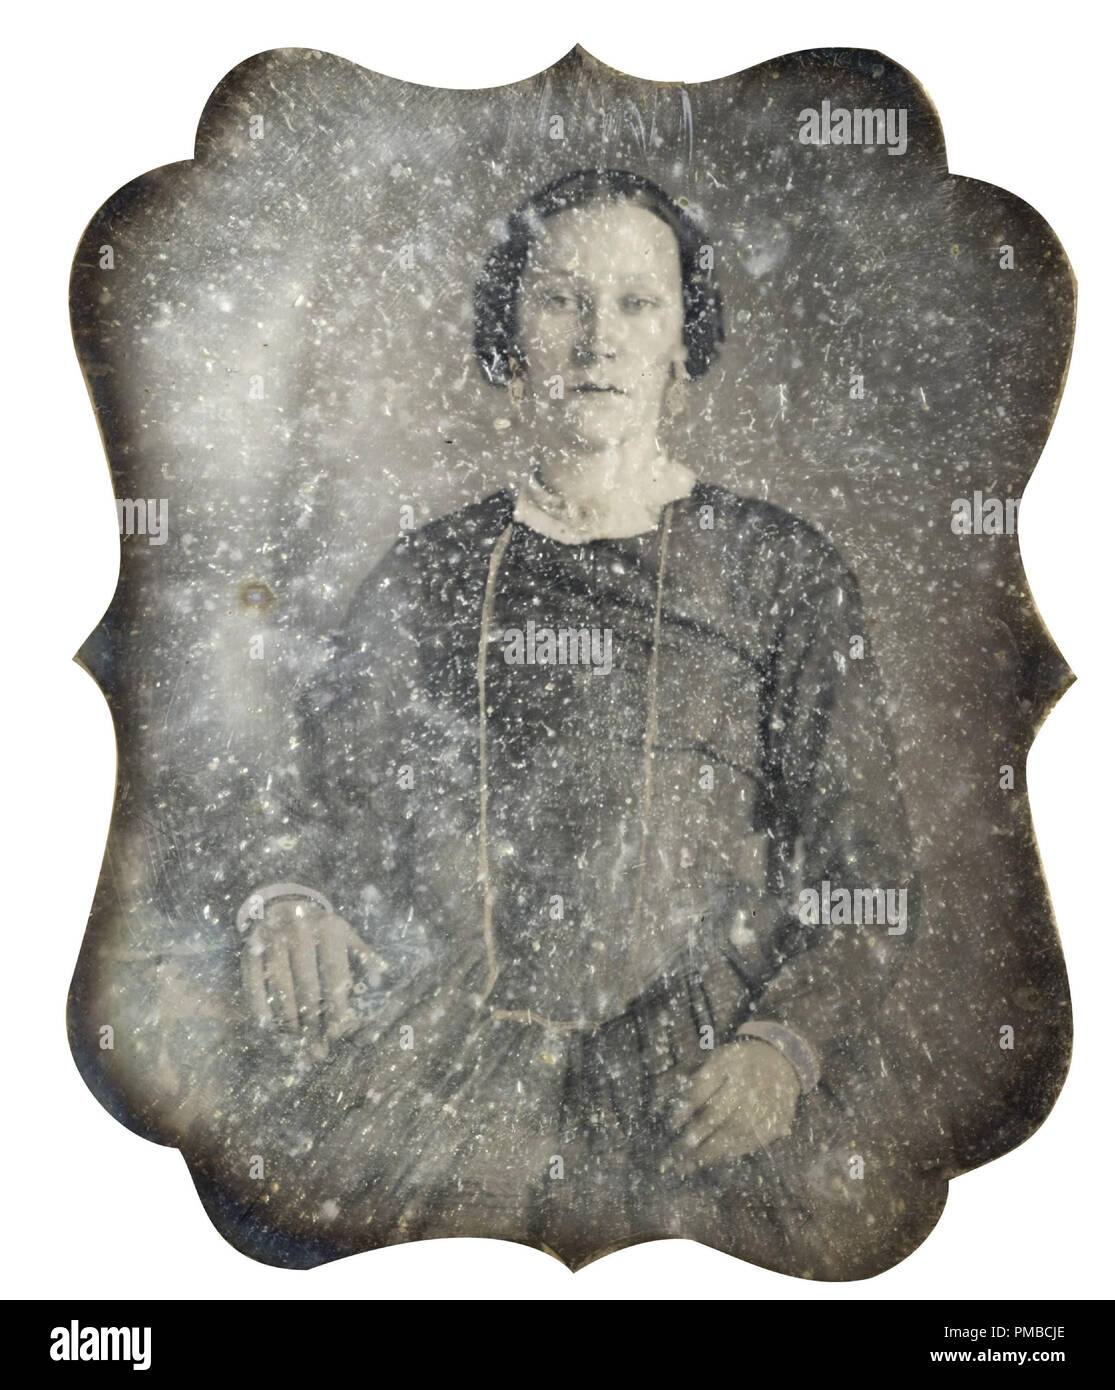 [Untitled] (Retrato de una mujer). Fecha/período: Ca. 1860. Fotografía. Daguerrotipo. Autor: fotógrafo no identificado. Foto de stock